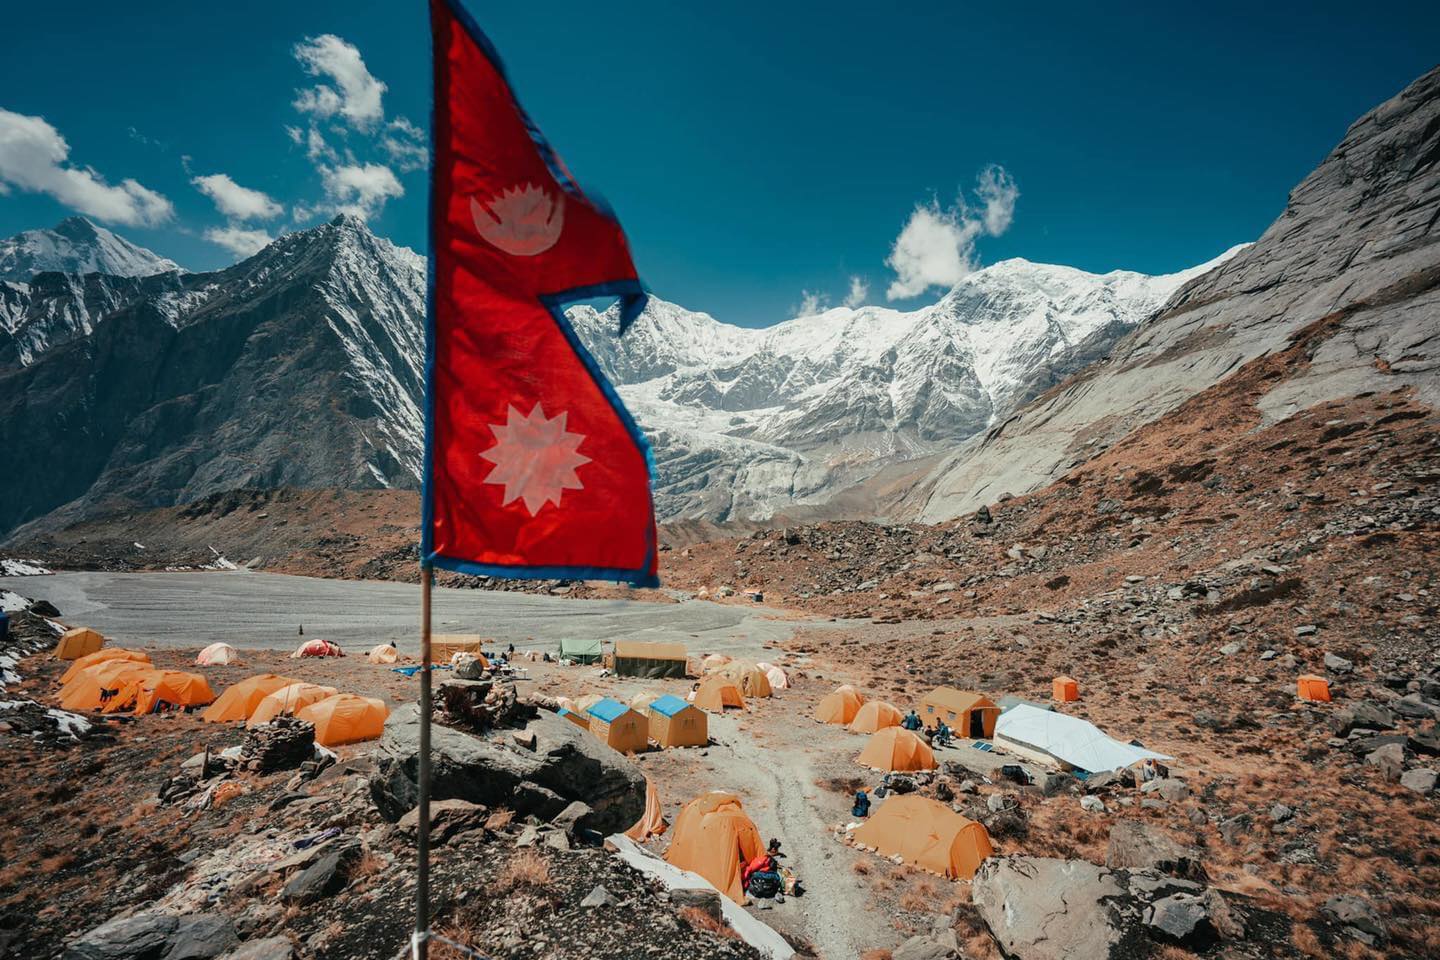 Базовый лагерь Аннапрурны. весна 2021 года. Фото Imagine Nepal